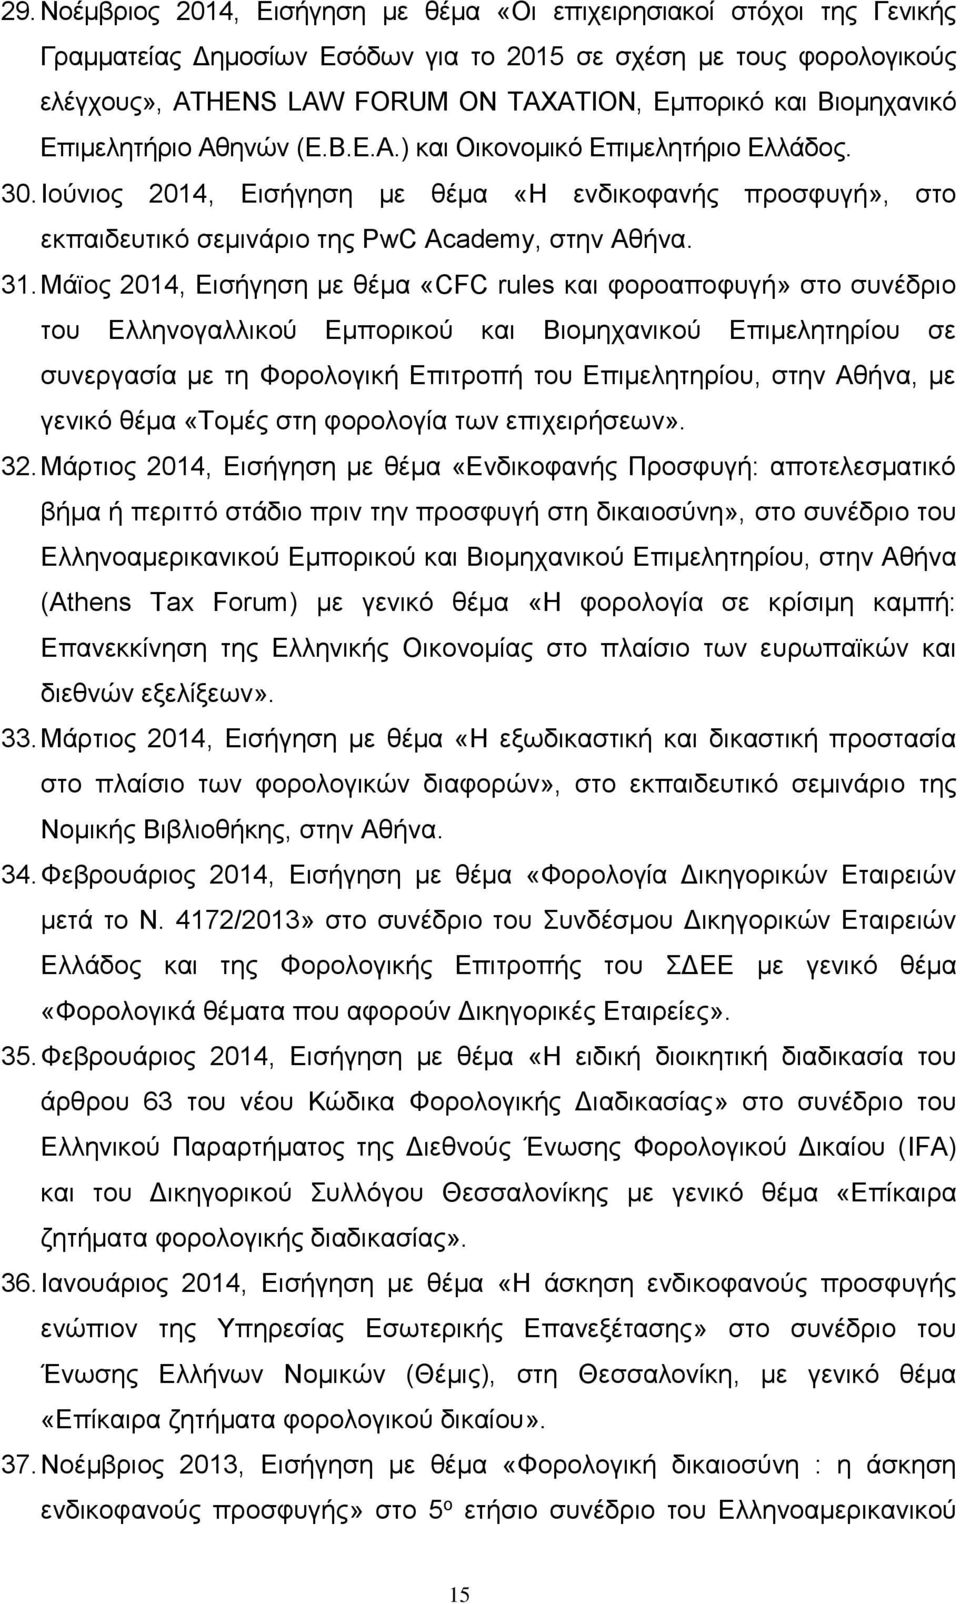 Μάϊος 2014, Εισήγηση με θέμα «CFC rules και φοροαποφυγή» στο συνέδριο του Ελληνογαλλικού Εμπορικού και Βιομηχανικού Επιμελητηρίου σε συνεργασία με τη Φορολογική Επιτροπή του Επιμελητηρίου, στην